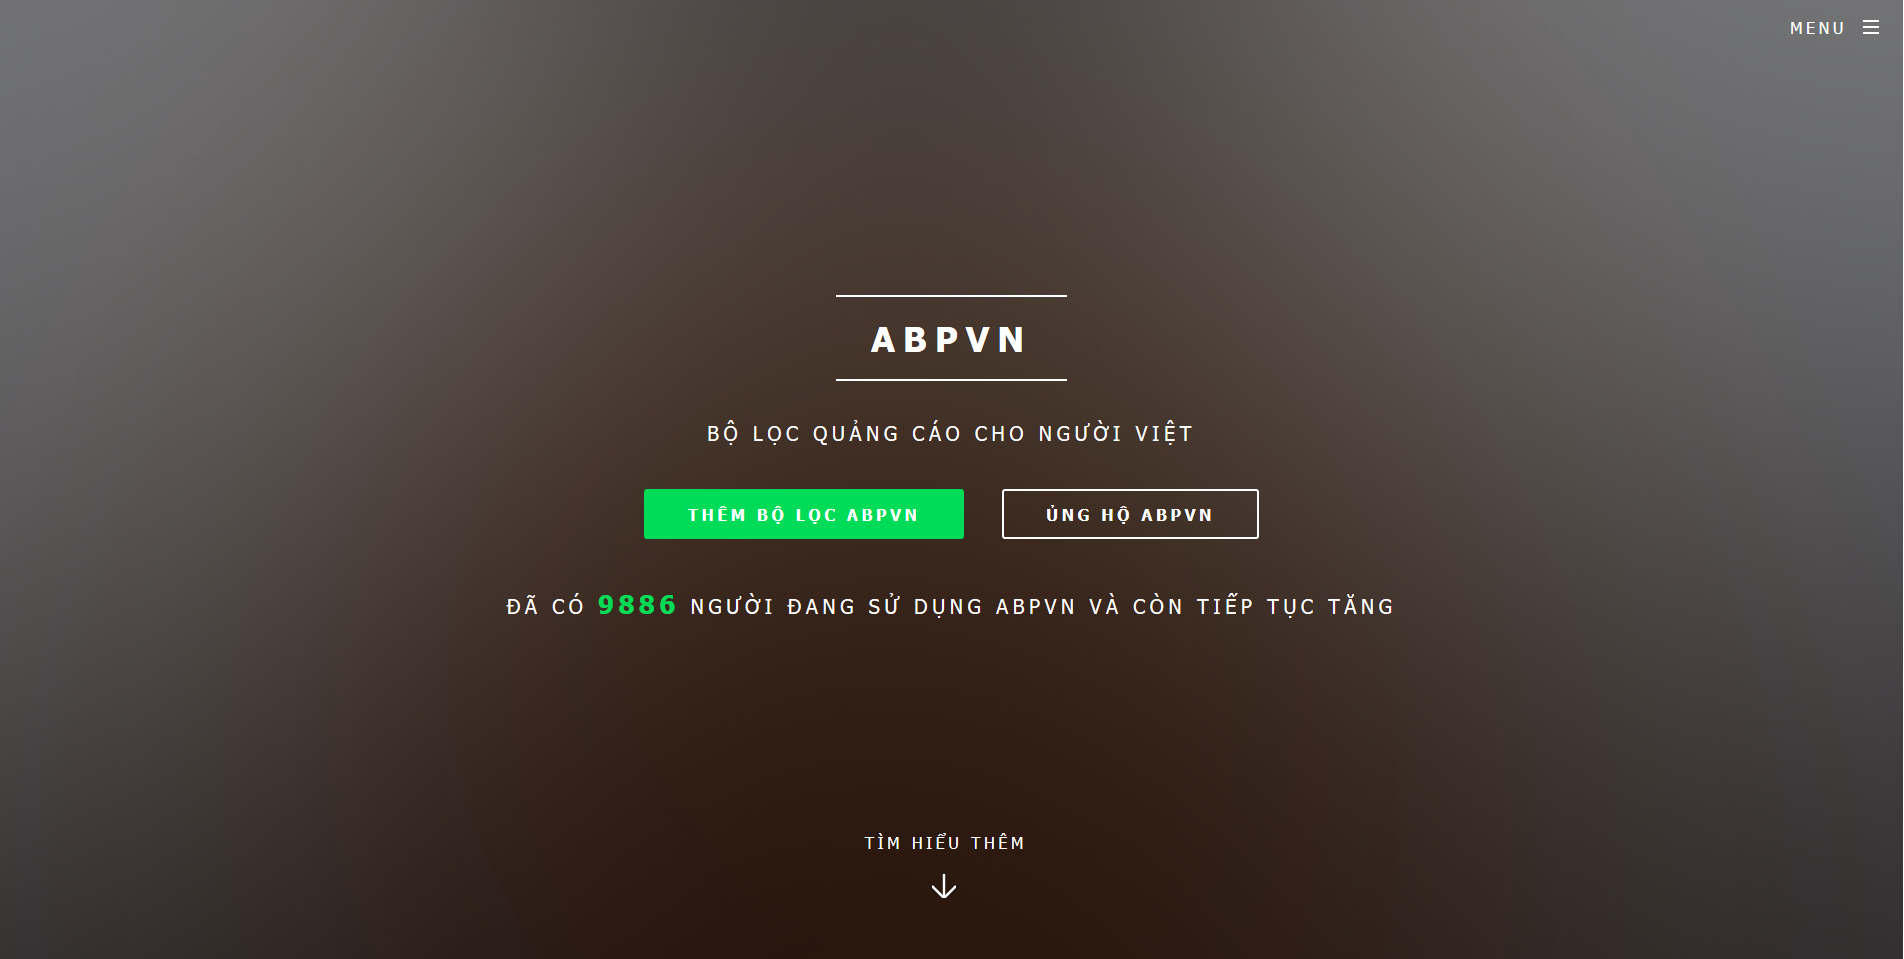 ABPVN - Bộ lọc quảng cáo cho người việt